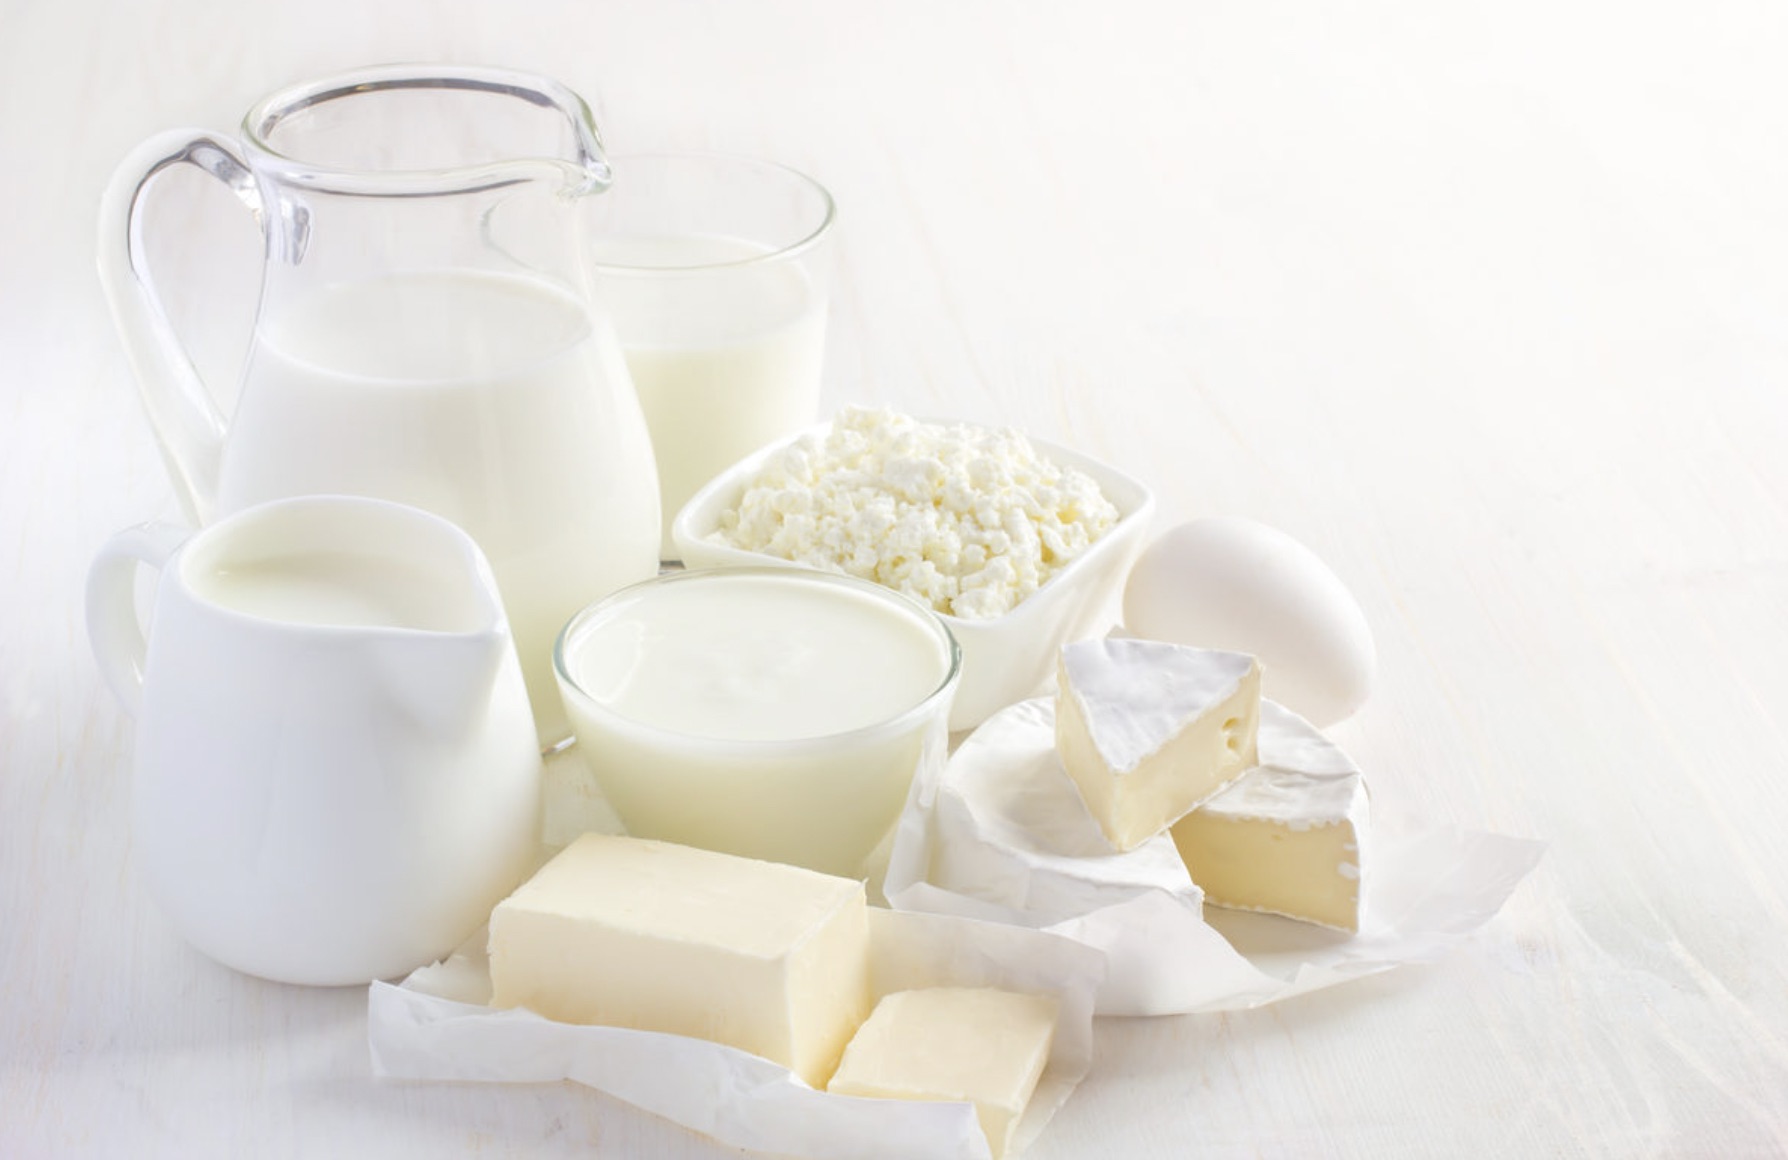 Актуализация ГОСТ на молочную продукцию